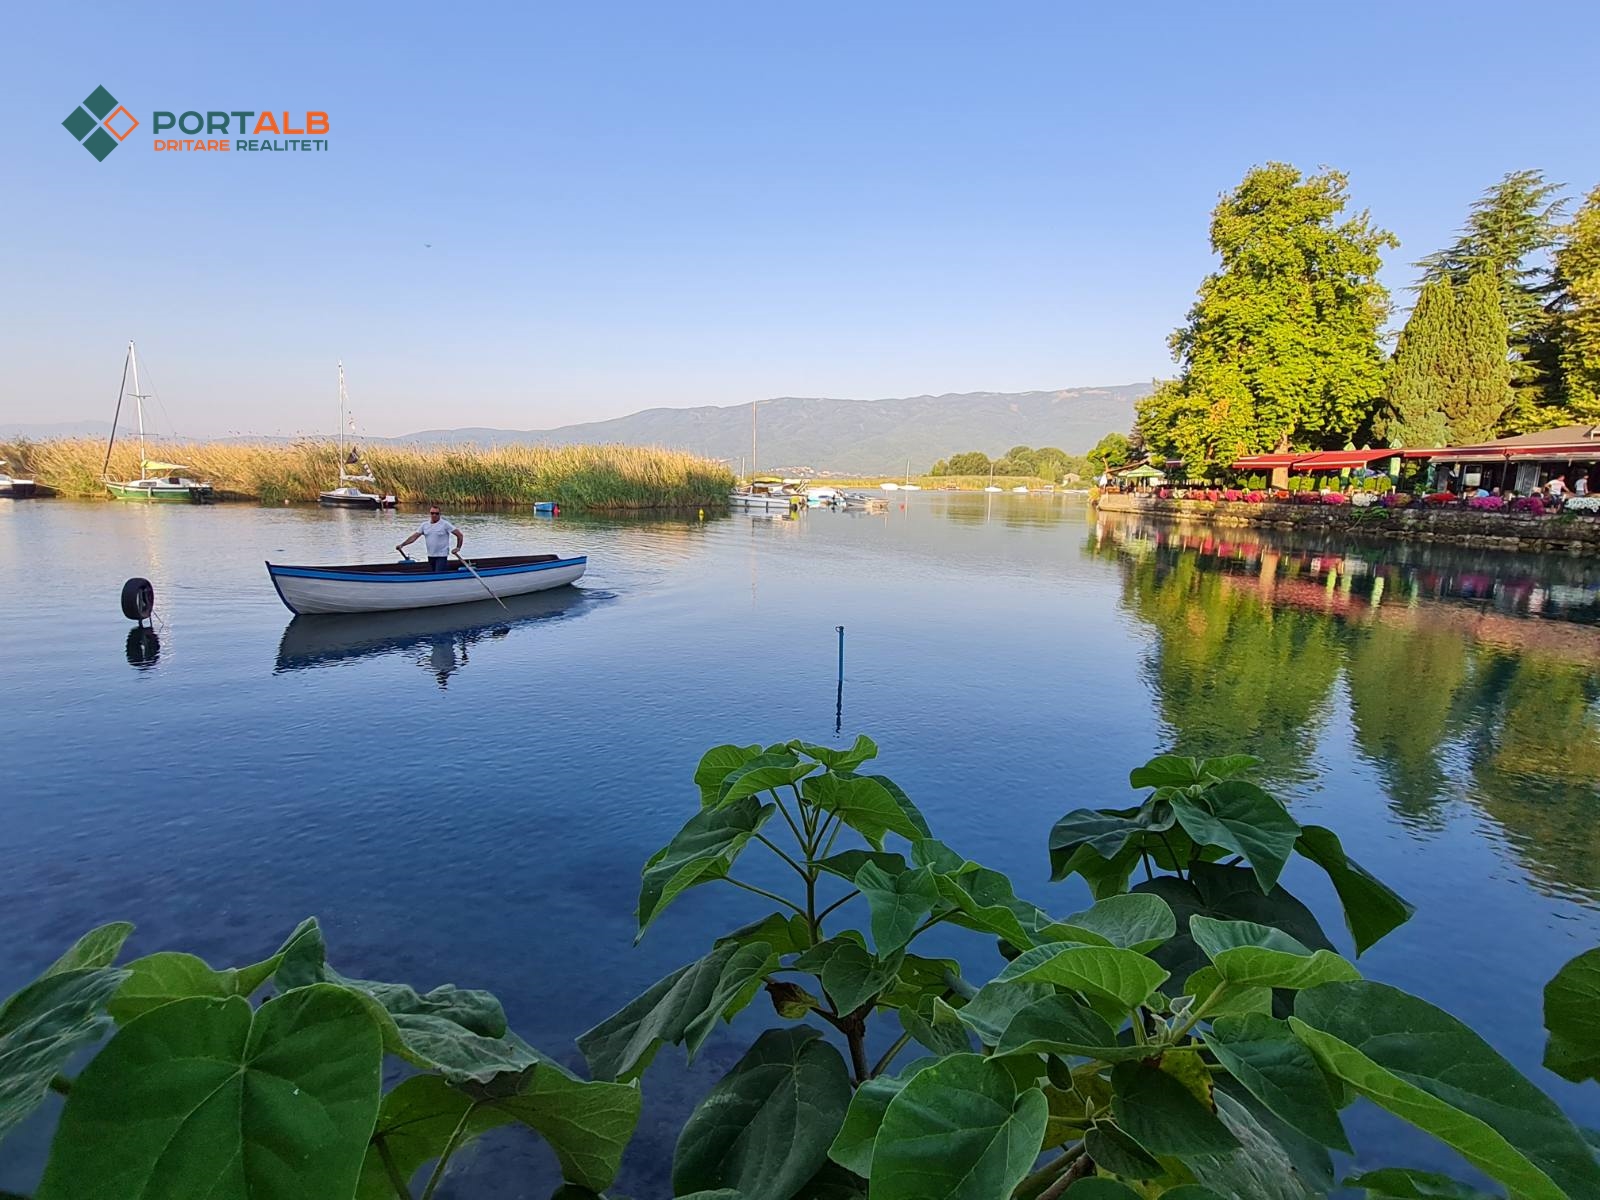 Varkë peshkimi në liqen, Struga- Fotografuar nga Shefkije Alasani / Portalb.mk